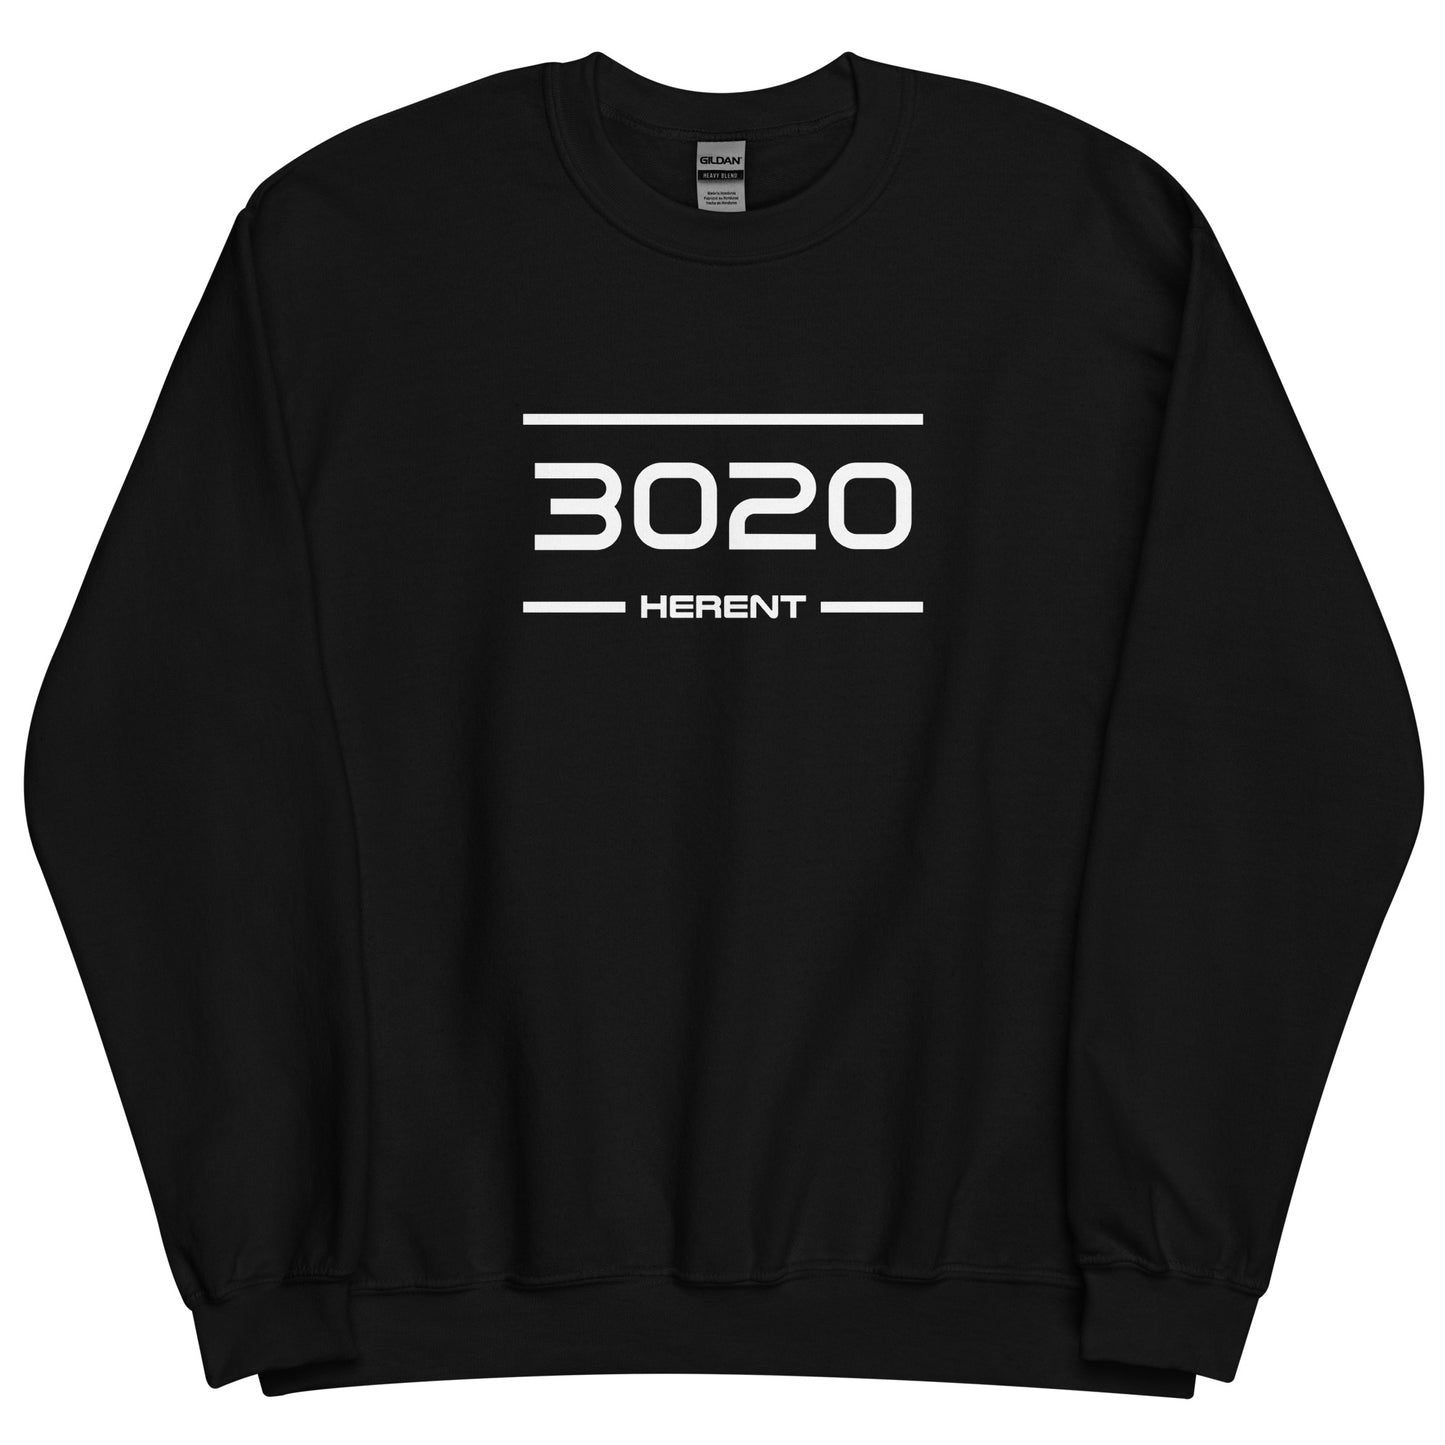 Sweater - 3020 - Herent (M/V)